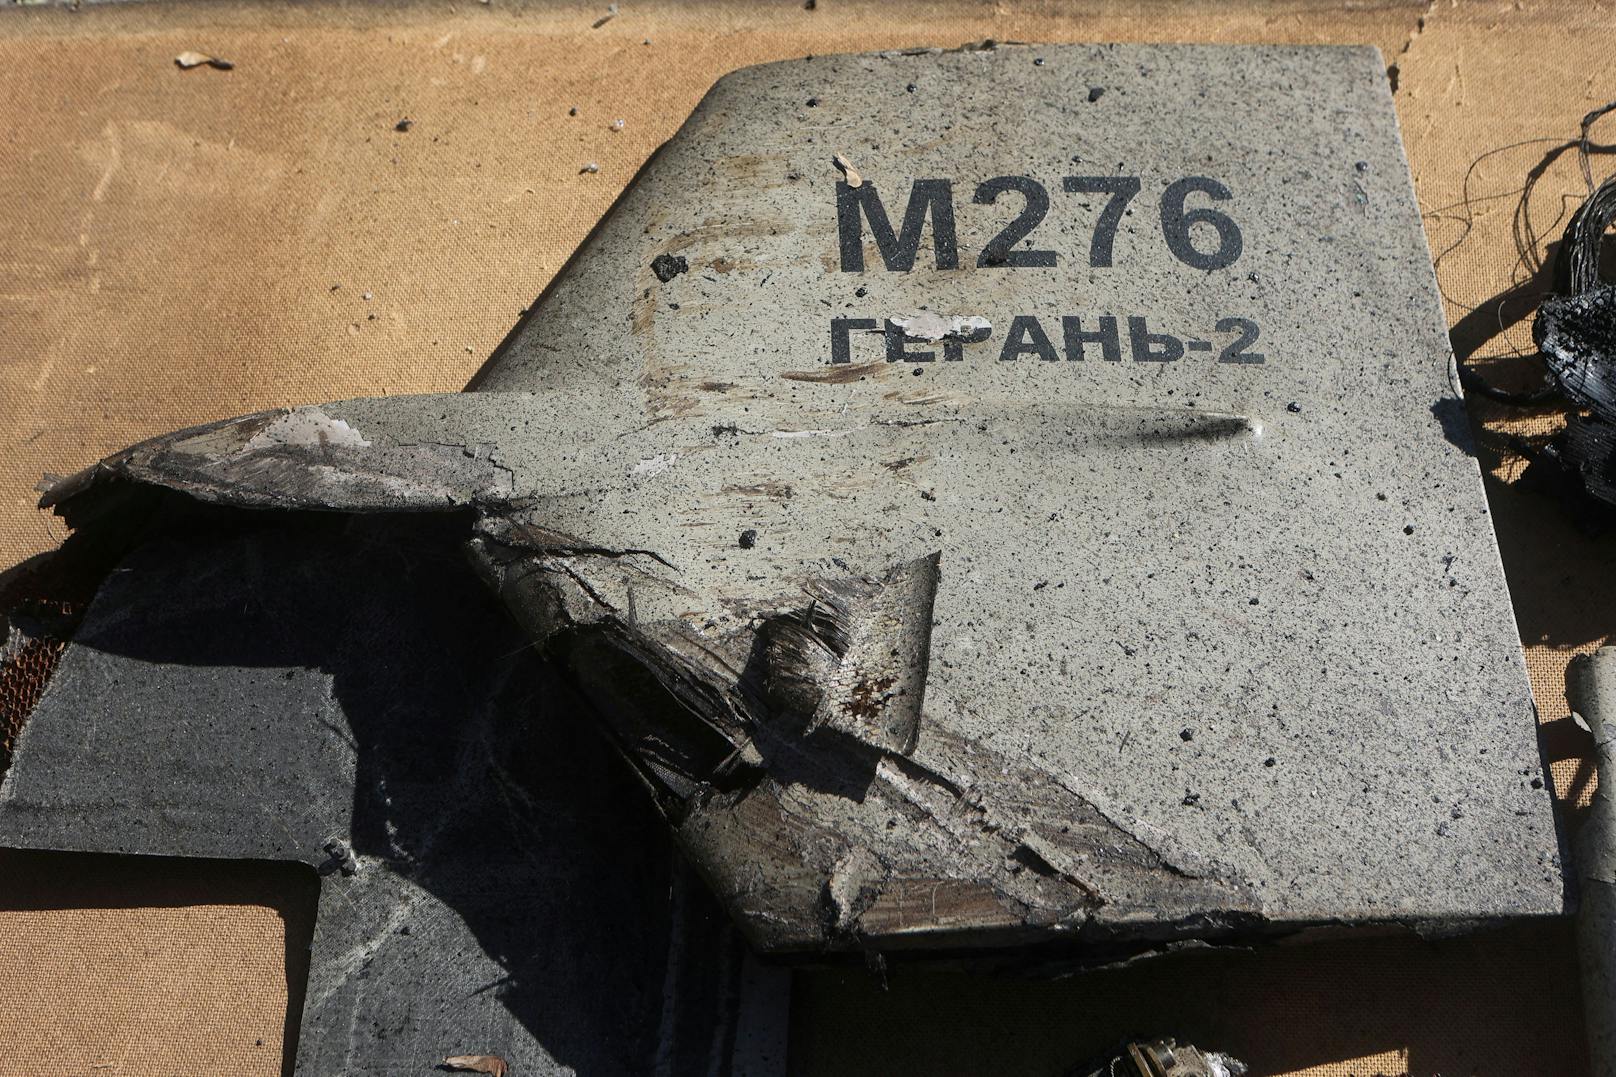 Trümmer einer russischen Kamikaze-Drohne nach einem Angriff auf ein Treibstofflager in Charkiw am 6. Oktober 2022. Ukrainische Behörden gehen davon aus, dass es sich um eine <a target="_blank" data-li-document-ref="100228629" href="https://www.heute.at/g/heeres-oberst-warnt-vor-putins-neuer-kamikaze-waffe[A-Za-z0-9.-]*-100228629">"Shahed-136"-Drohne</a> iranischer Produktion handelt.